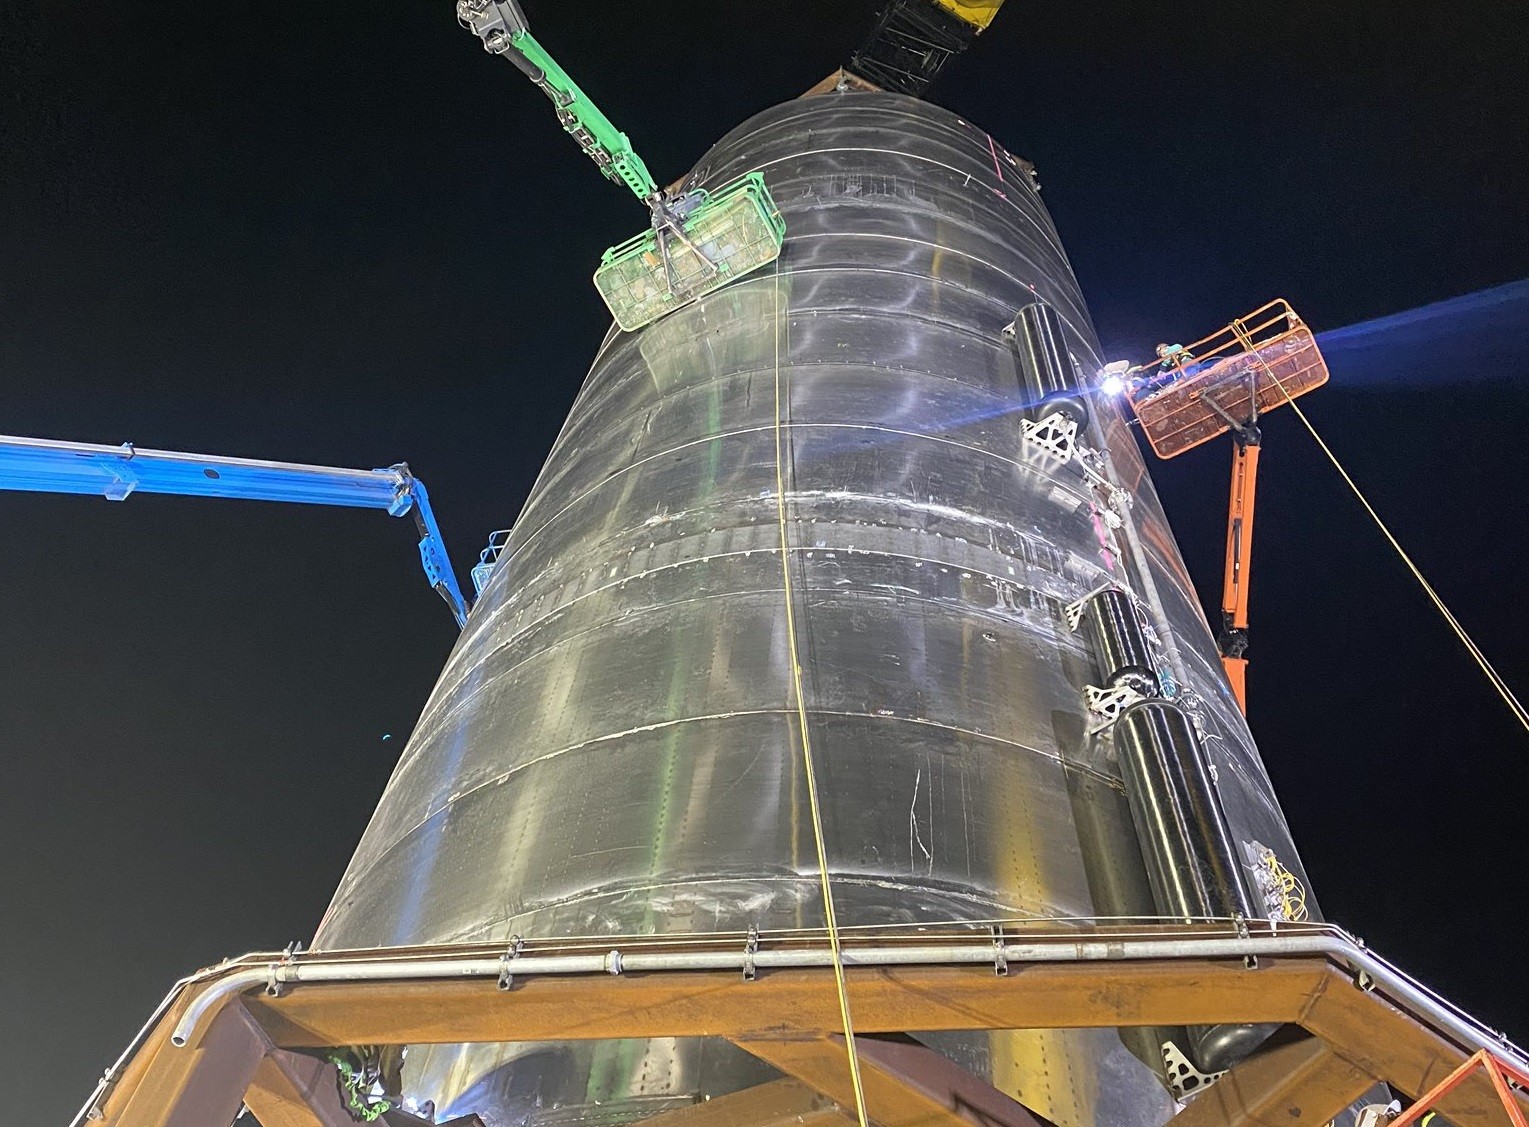 Prototyp Starship SN3 w trakcie przygotowań do kriogenicznego testu ciśnieniowego. Fot. Elon Musk via Twitter [@elonmusk]